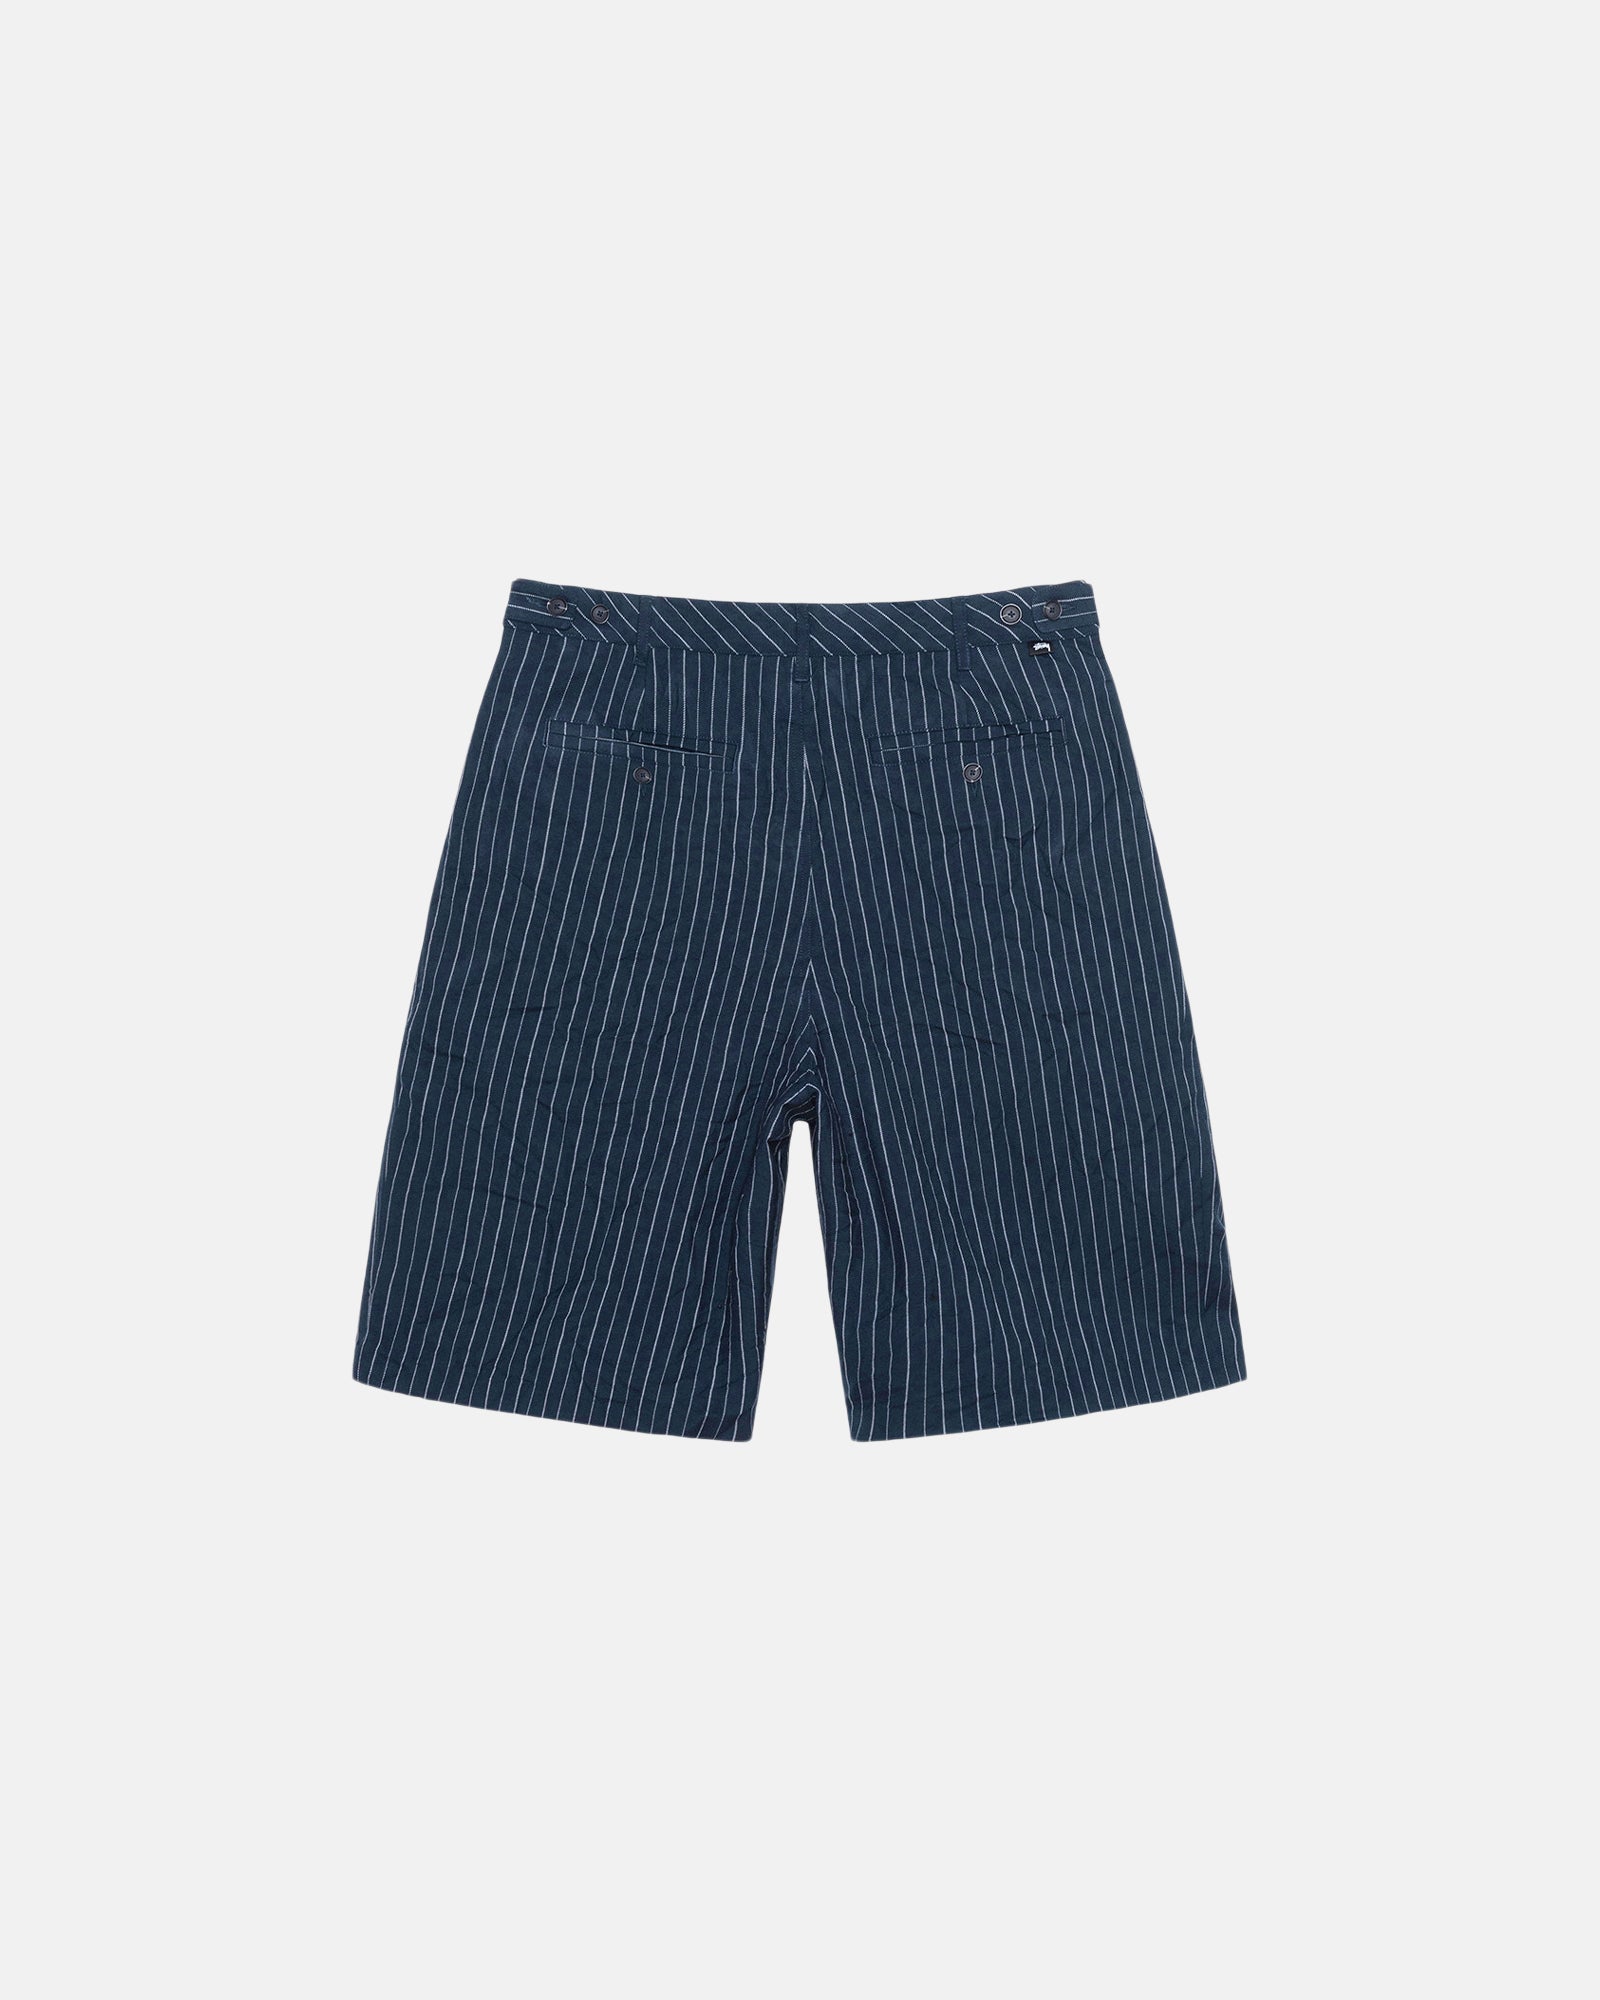 Stüssy Volume Pleated Short Wrinkled Stripe Navy Shorts